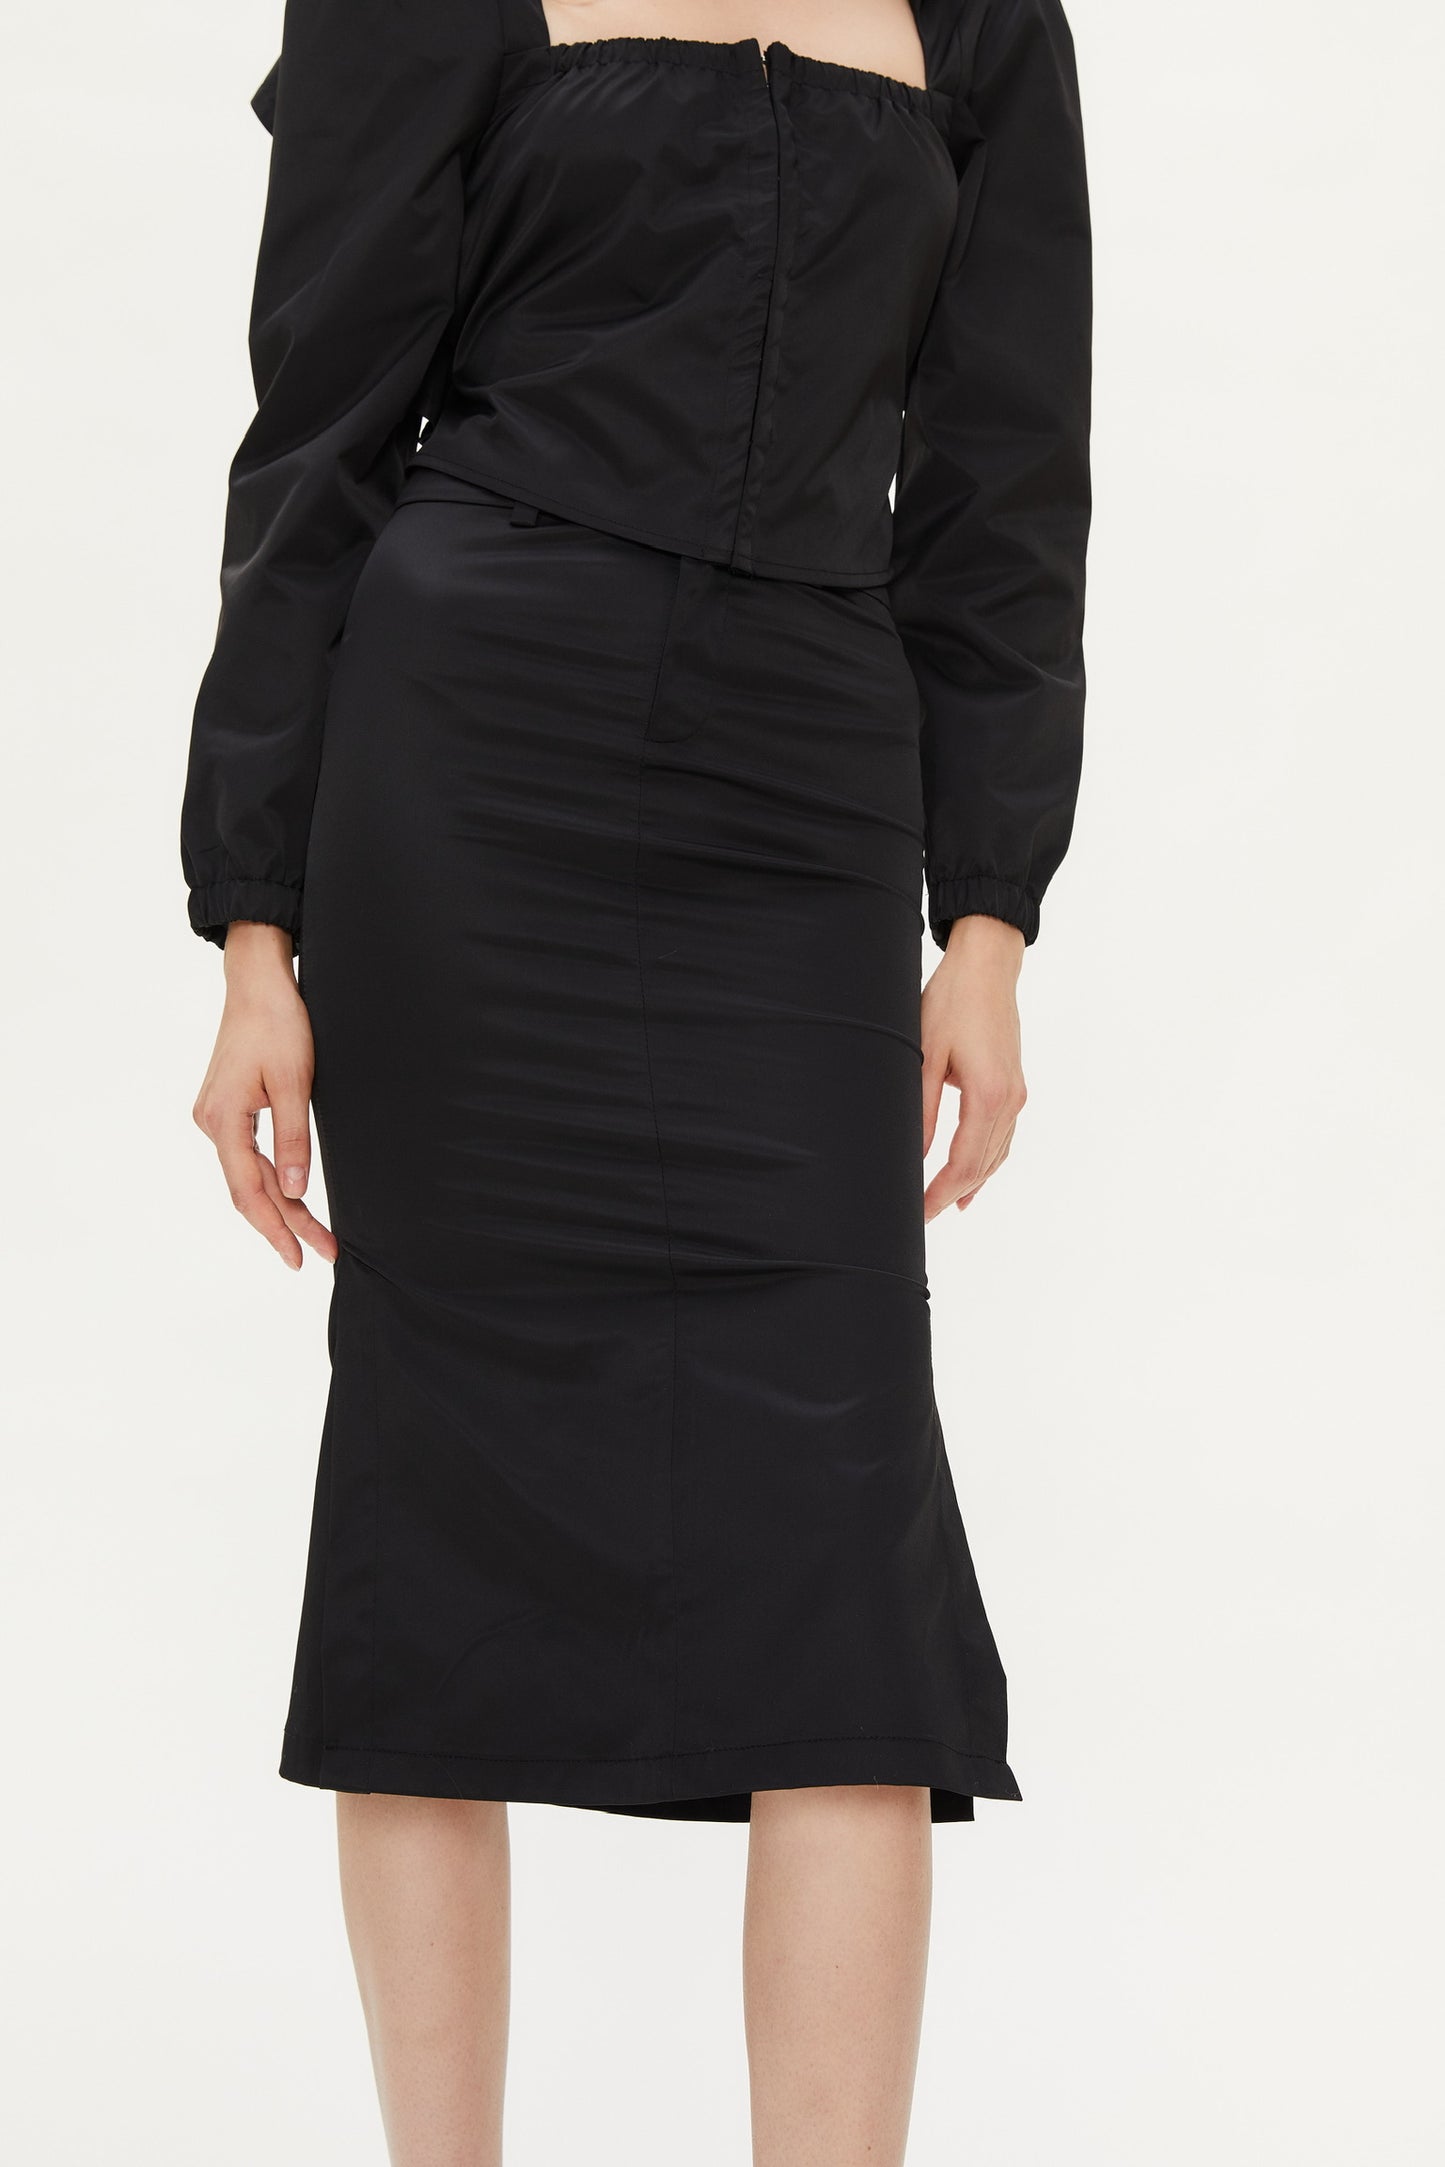 Kobi Double Slit Casual Skirt in Black